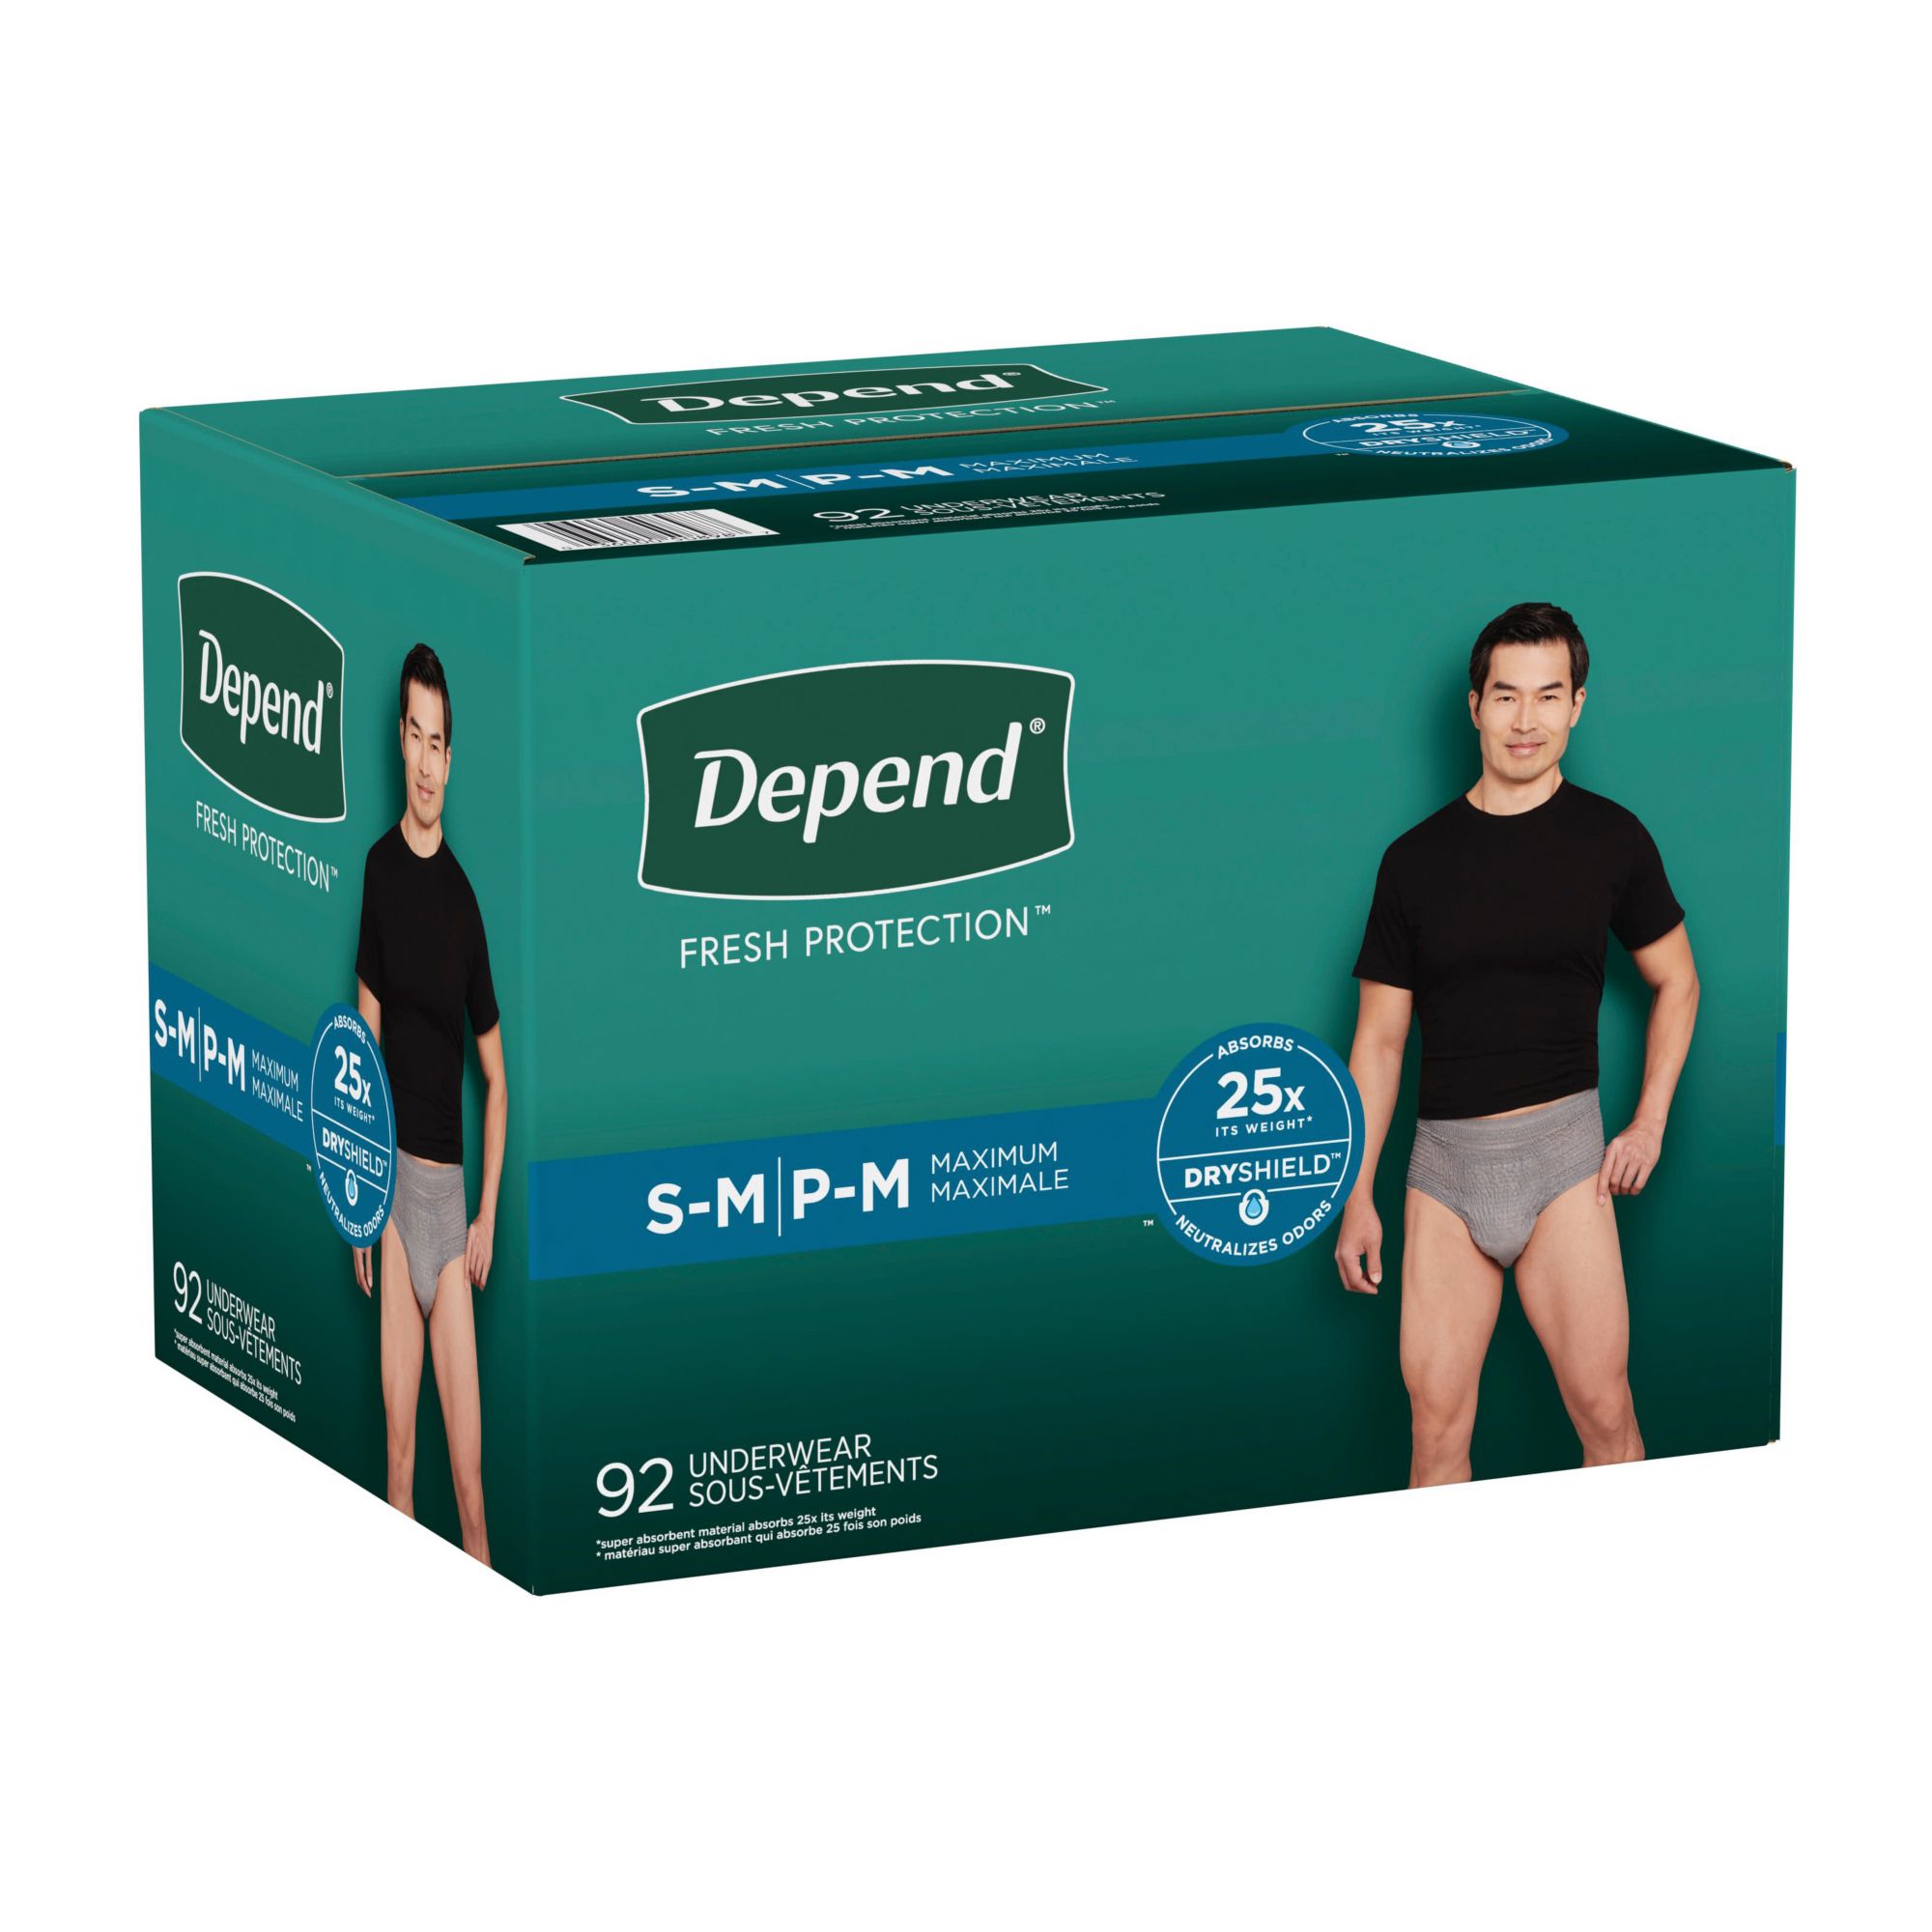 Depend Fit-Flex Underwear for Men (Large) 84 Count